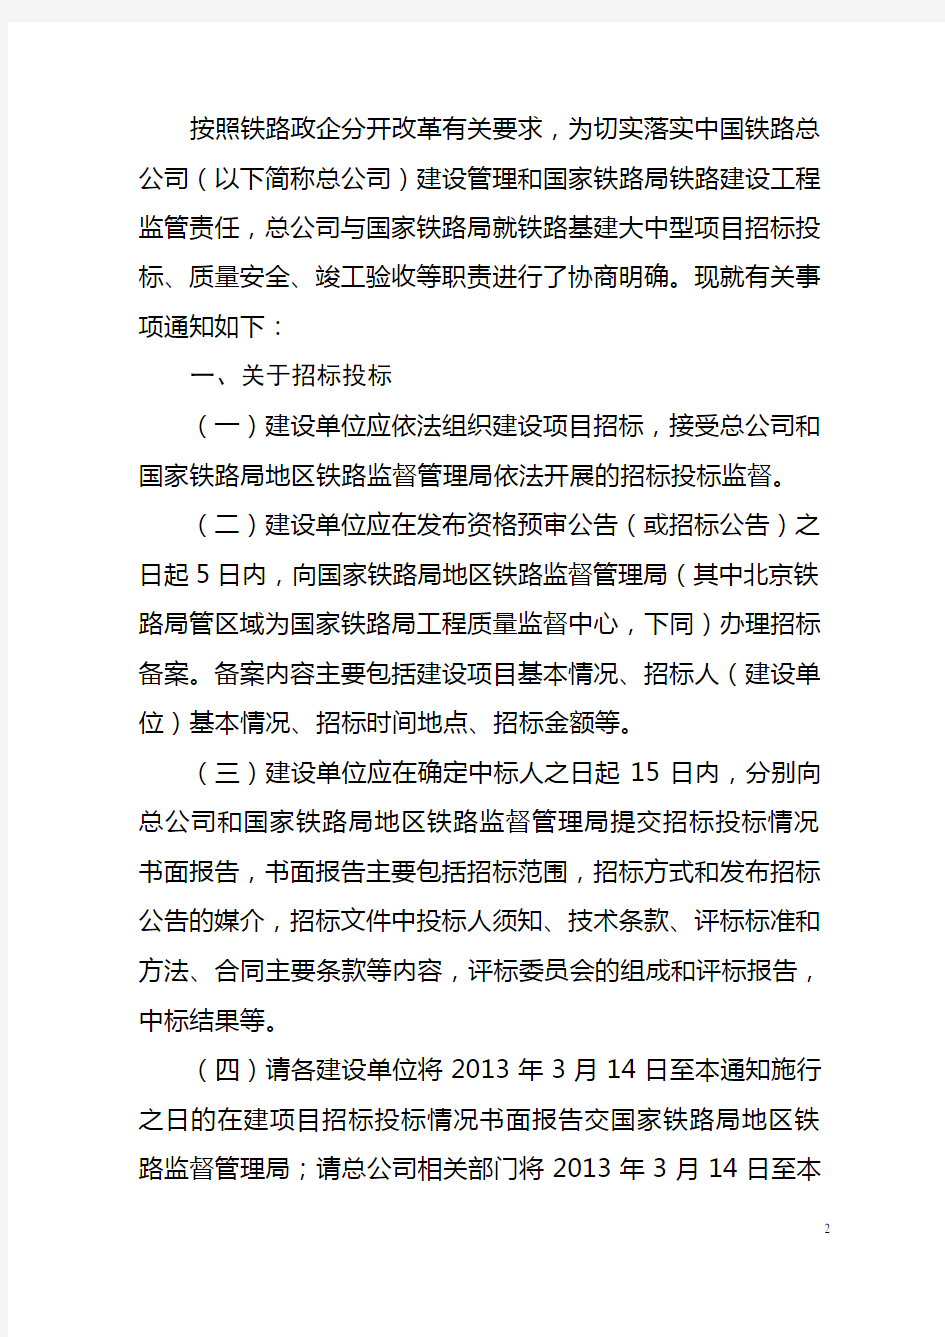 中国铁路总公司关于明确铁路建设管理有关事项的通知-铁总建设[2014]319号